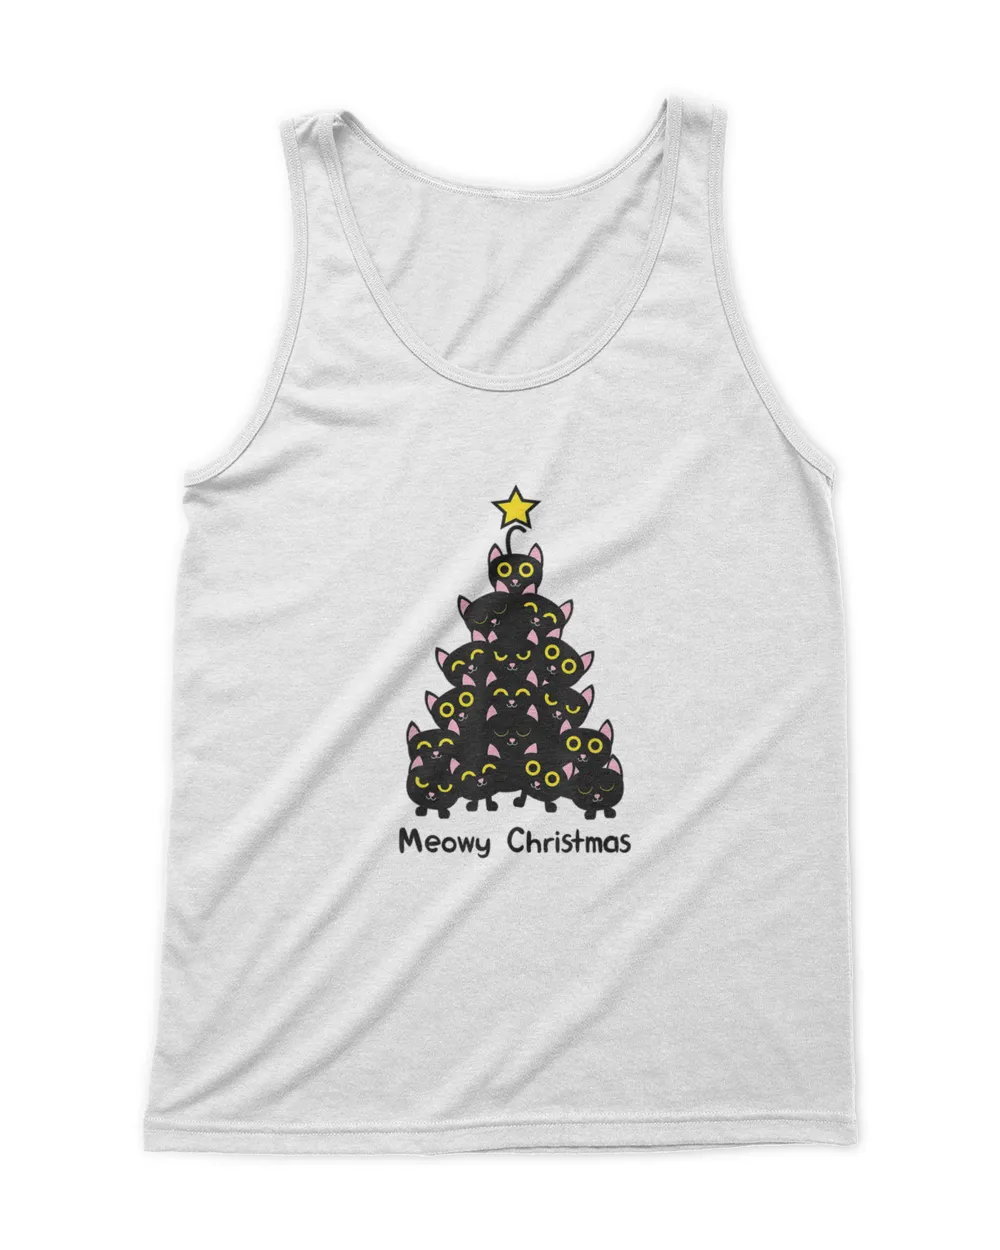 Meowy cat Christmas tree shirt men women